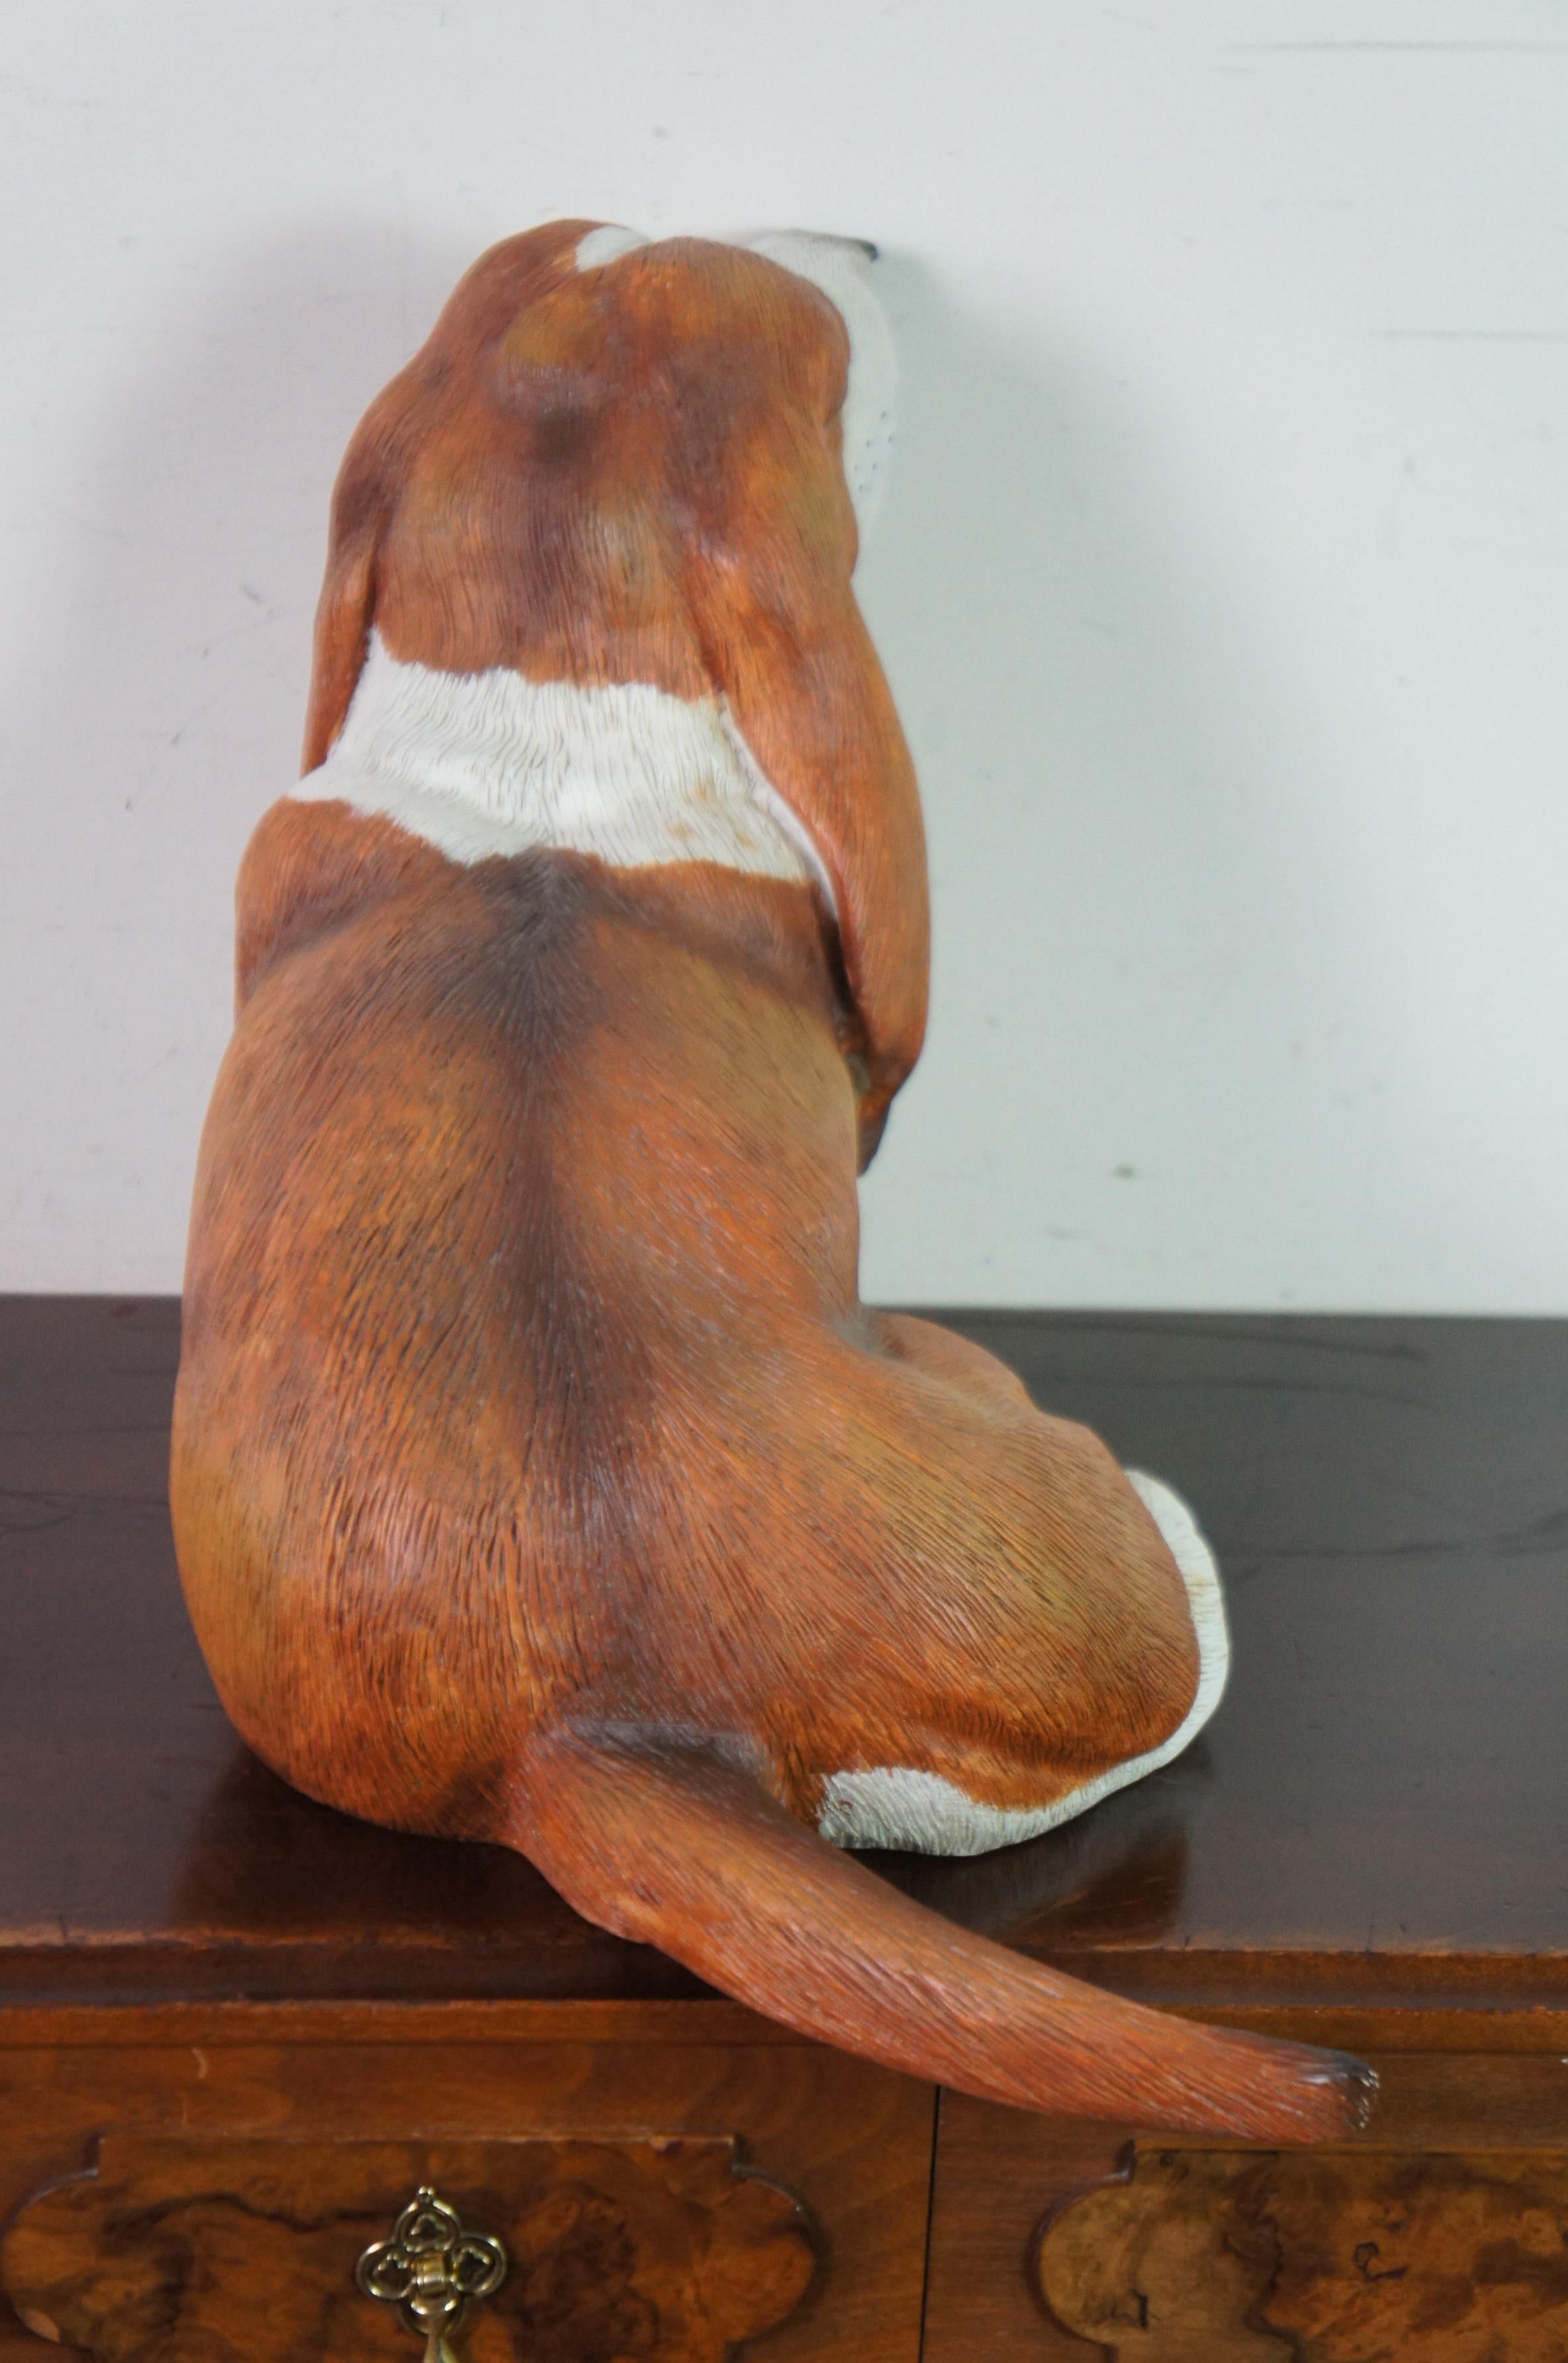 hairless basset hound